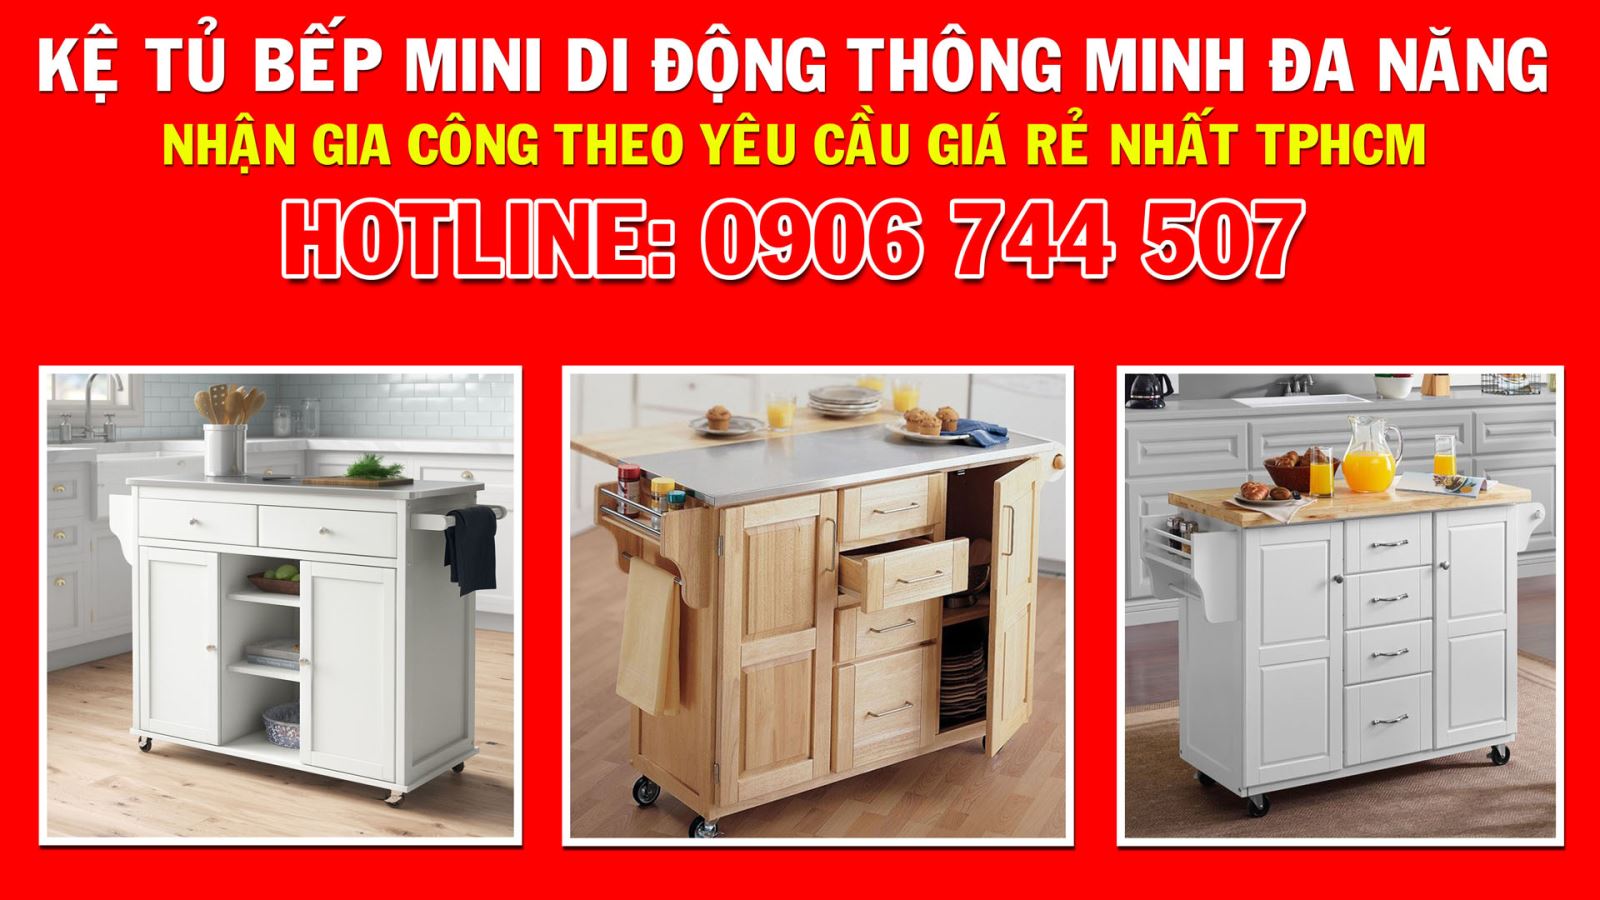 Gia công nội thất kệ tủ bếp mini di động đa năng giá rẻ nhất TPHCM